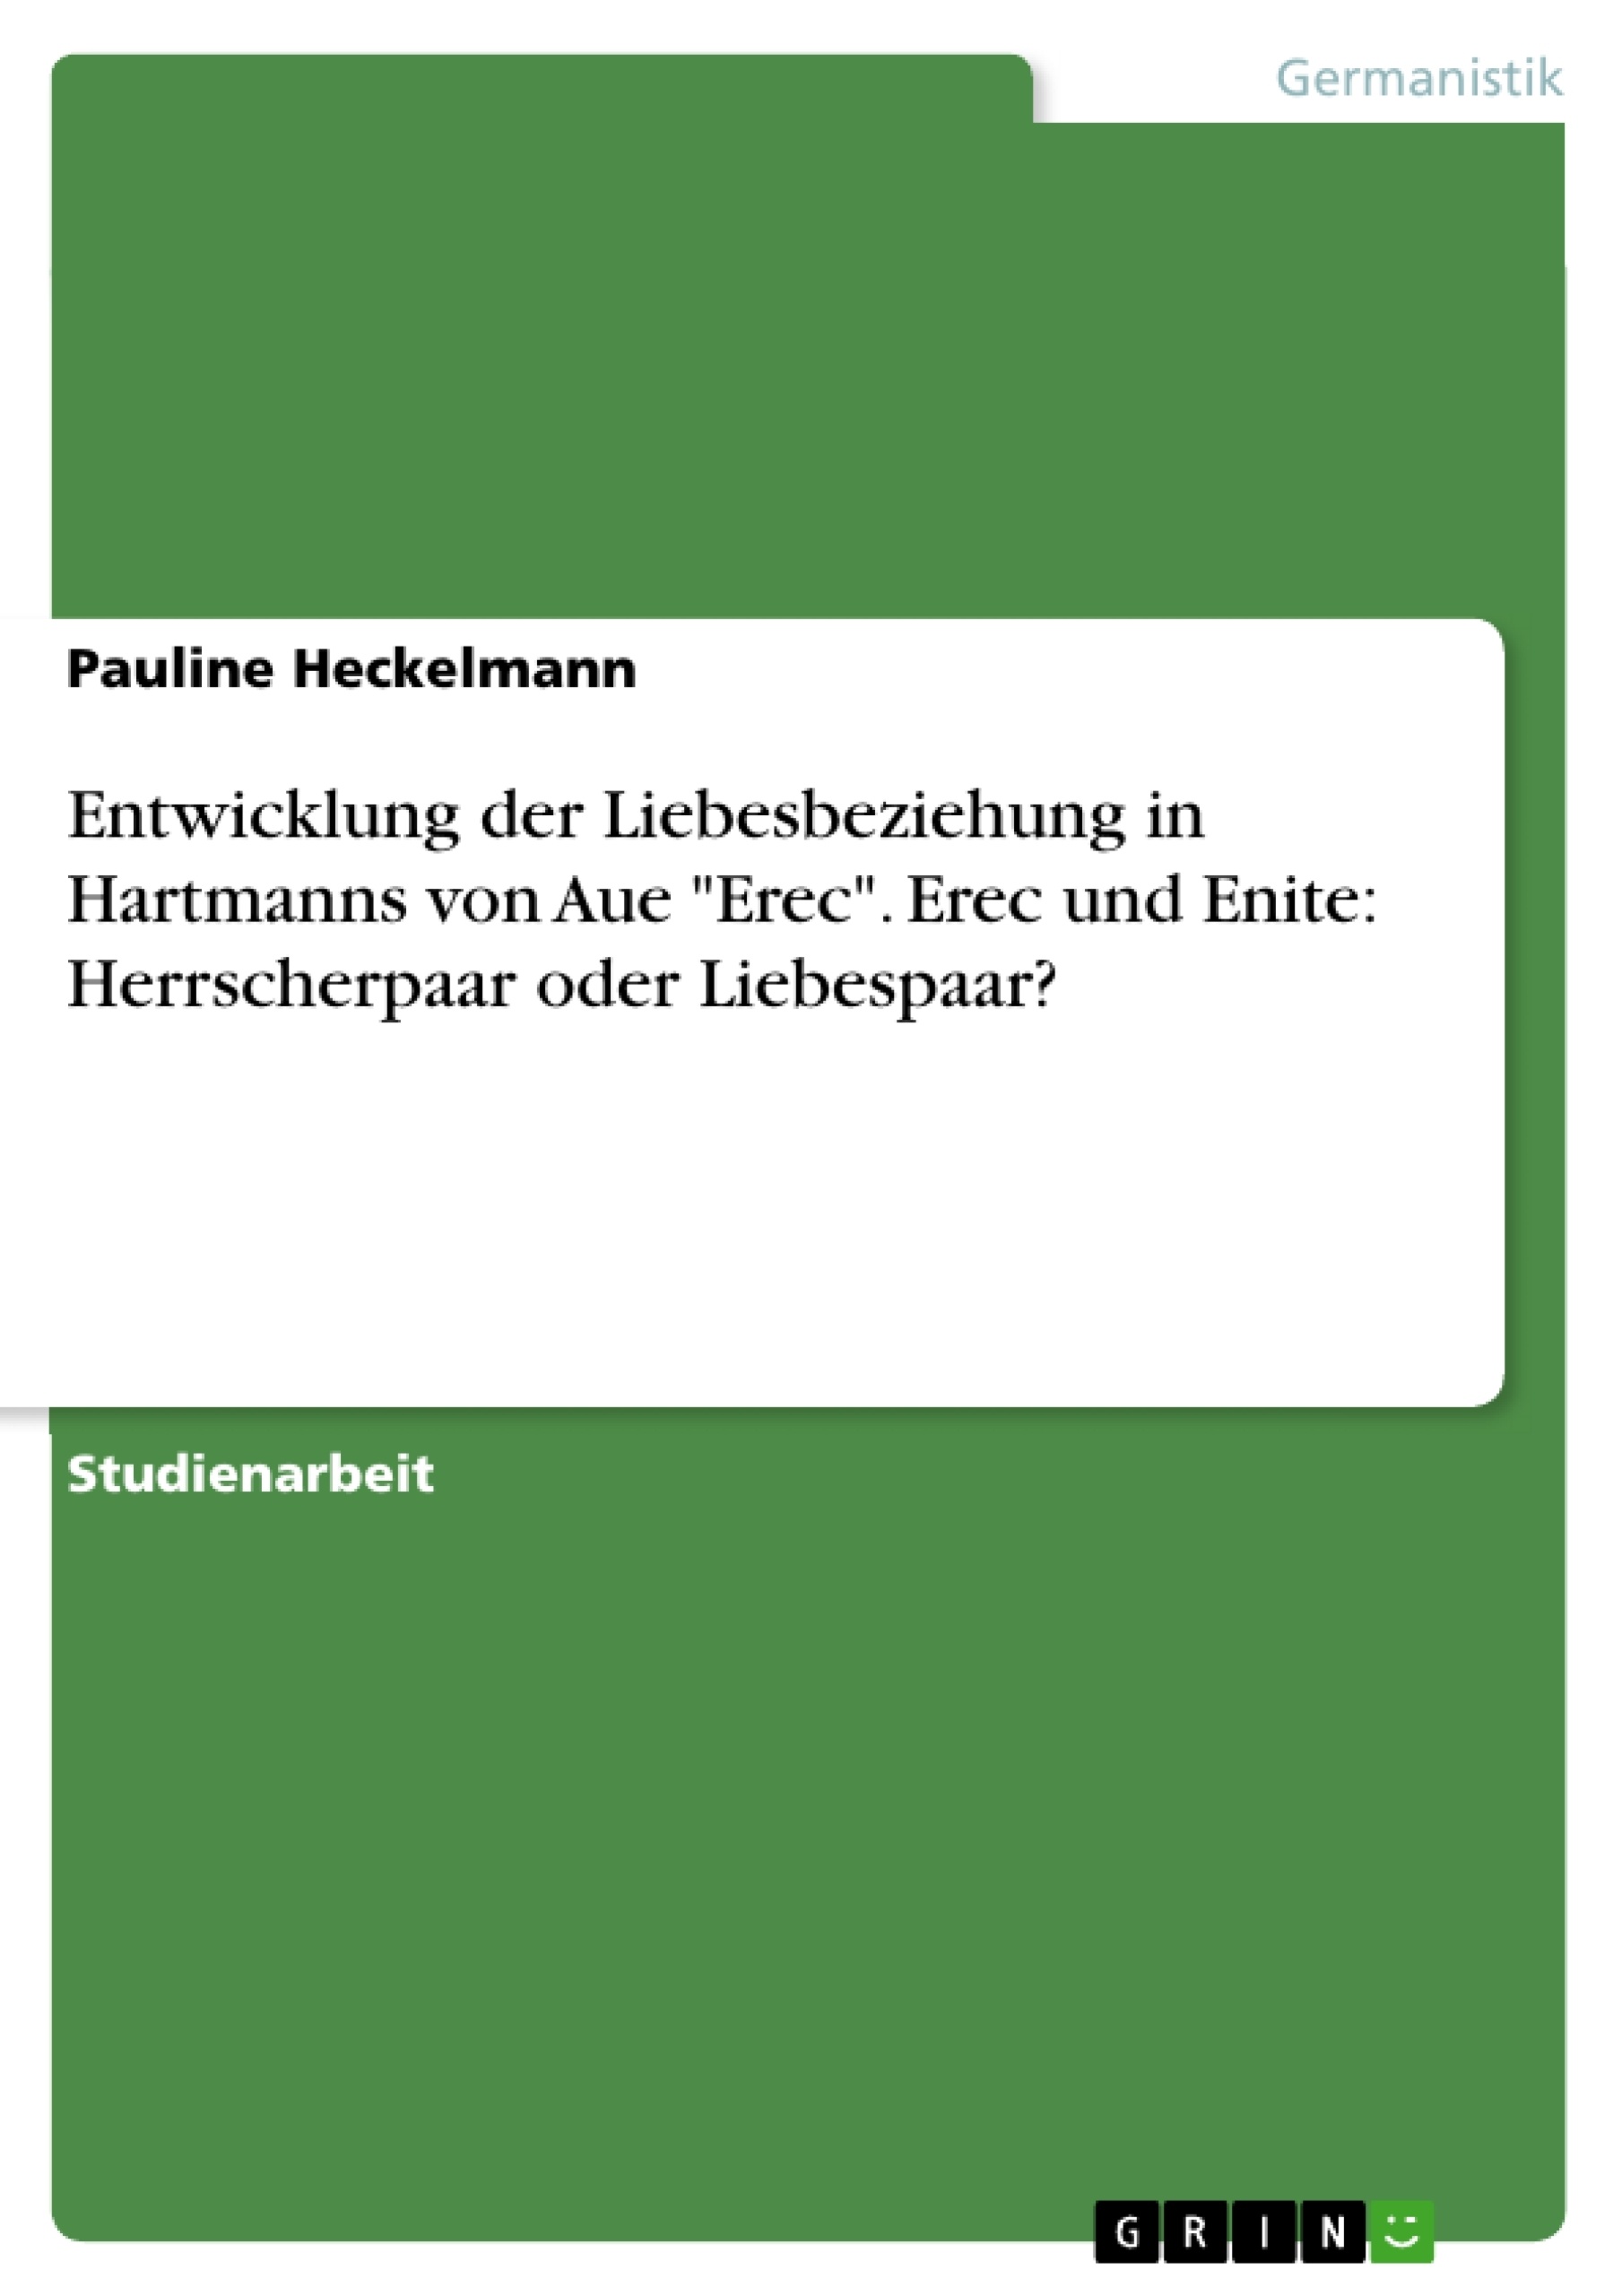 Title: Entwicklung der Liebesbeziehung in  Hartmanns von Aue "Erec". Erec und Enite: Herrscherpaar oder Liebespaar?